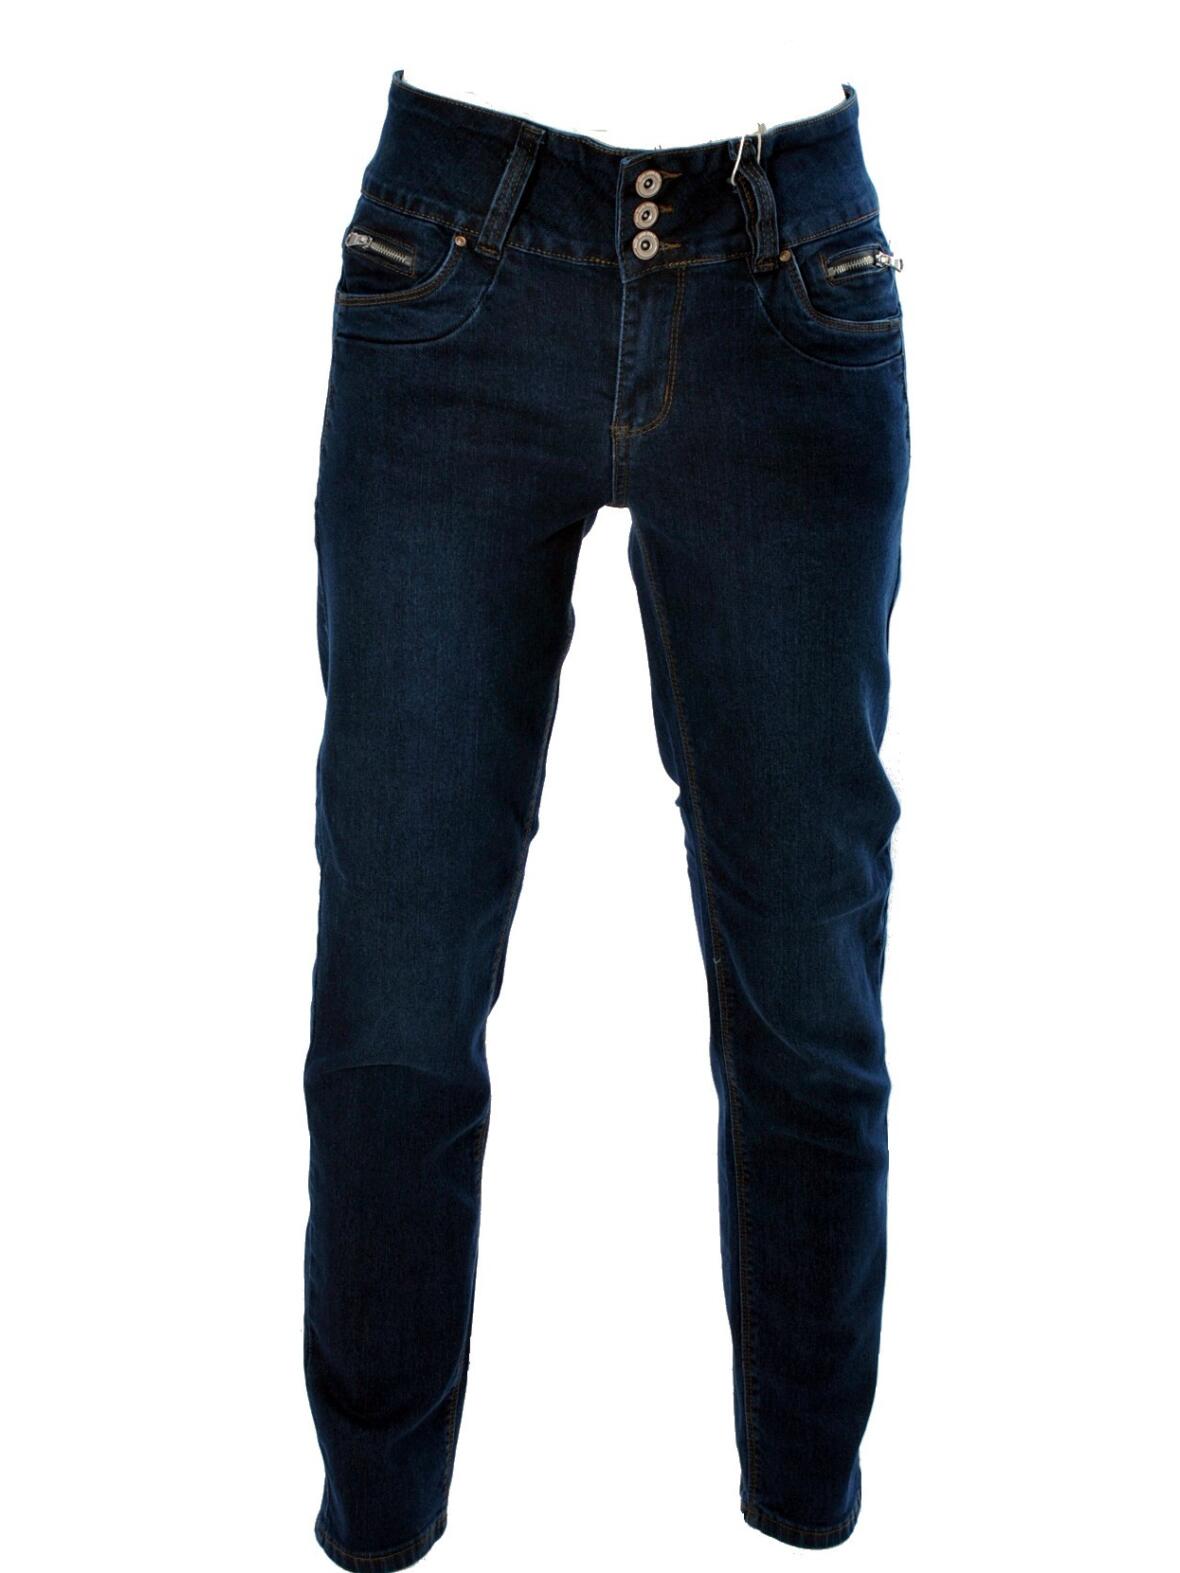 Boutique Dorthe - Lauge Gussi jeans